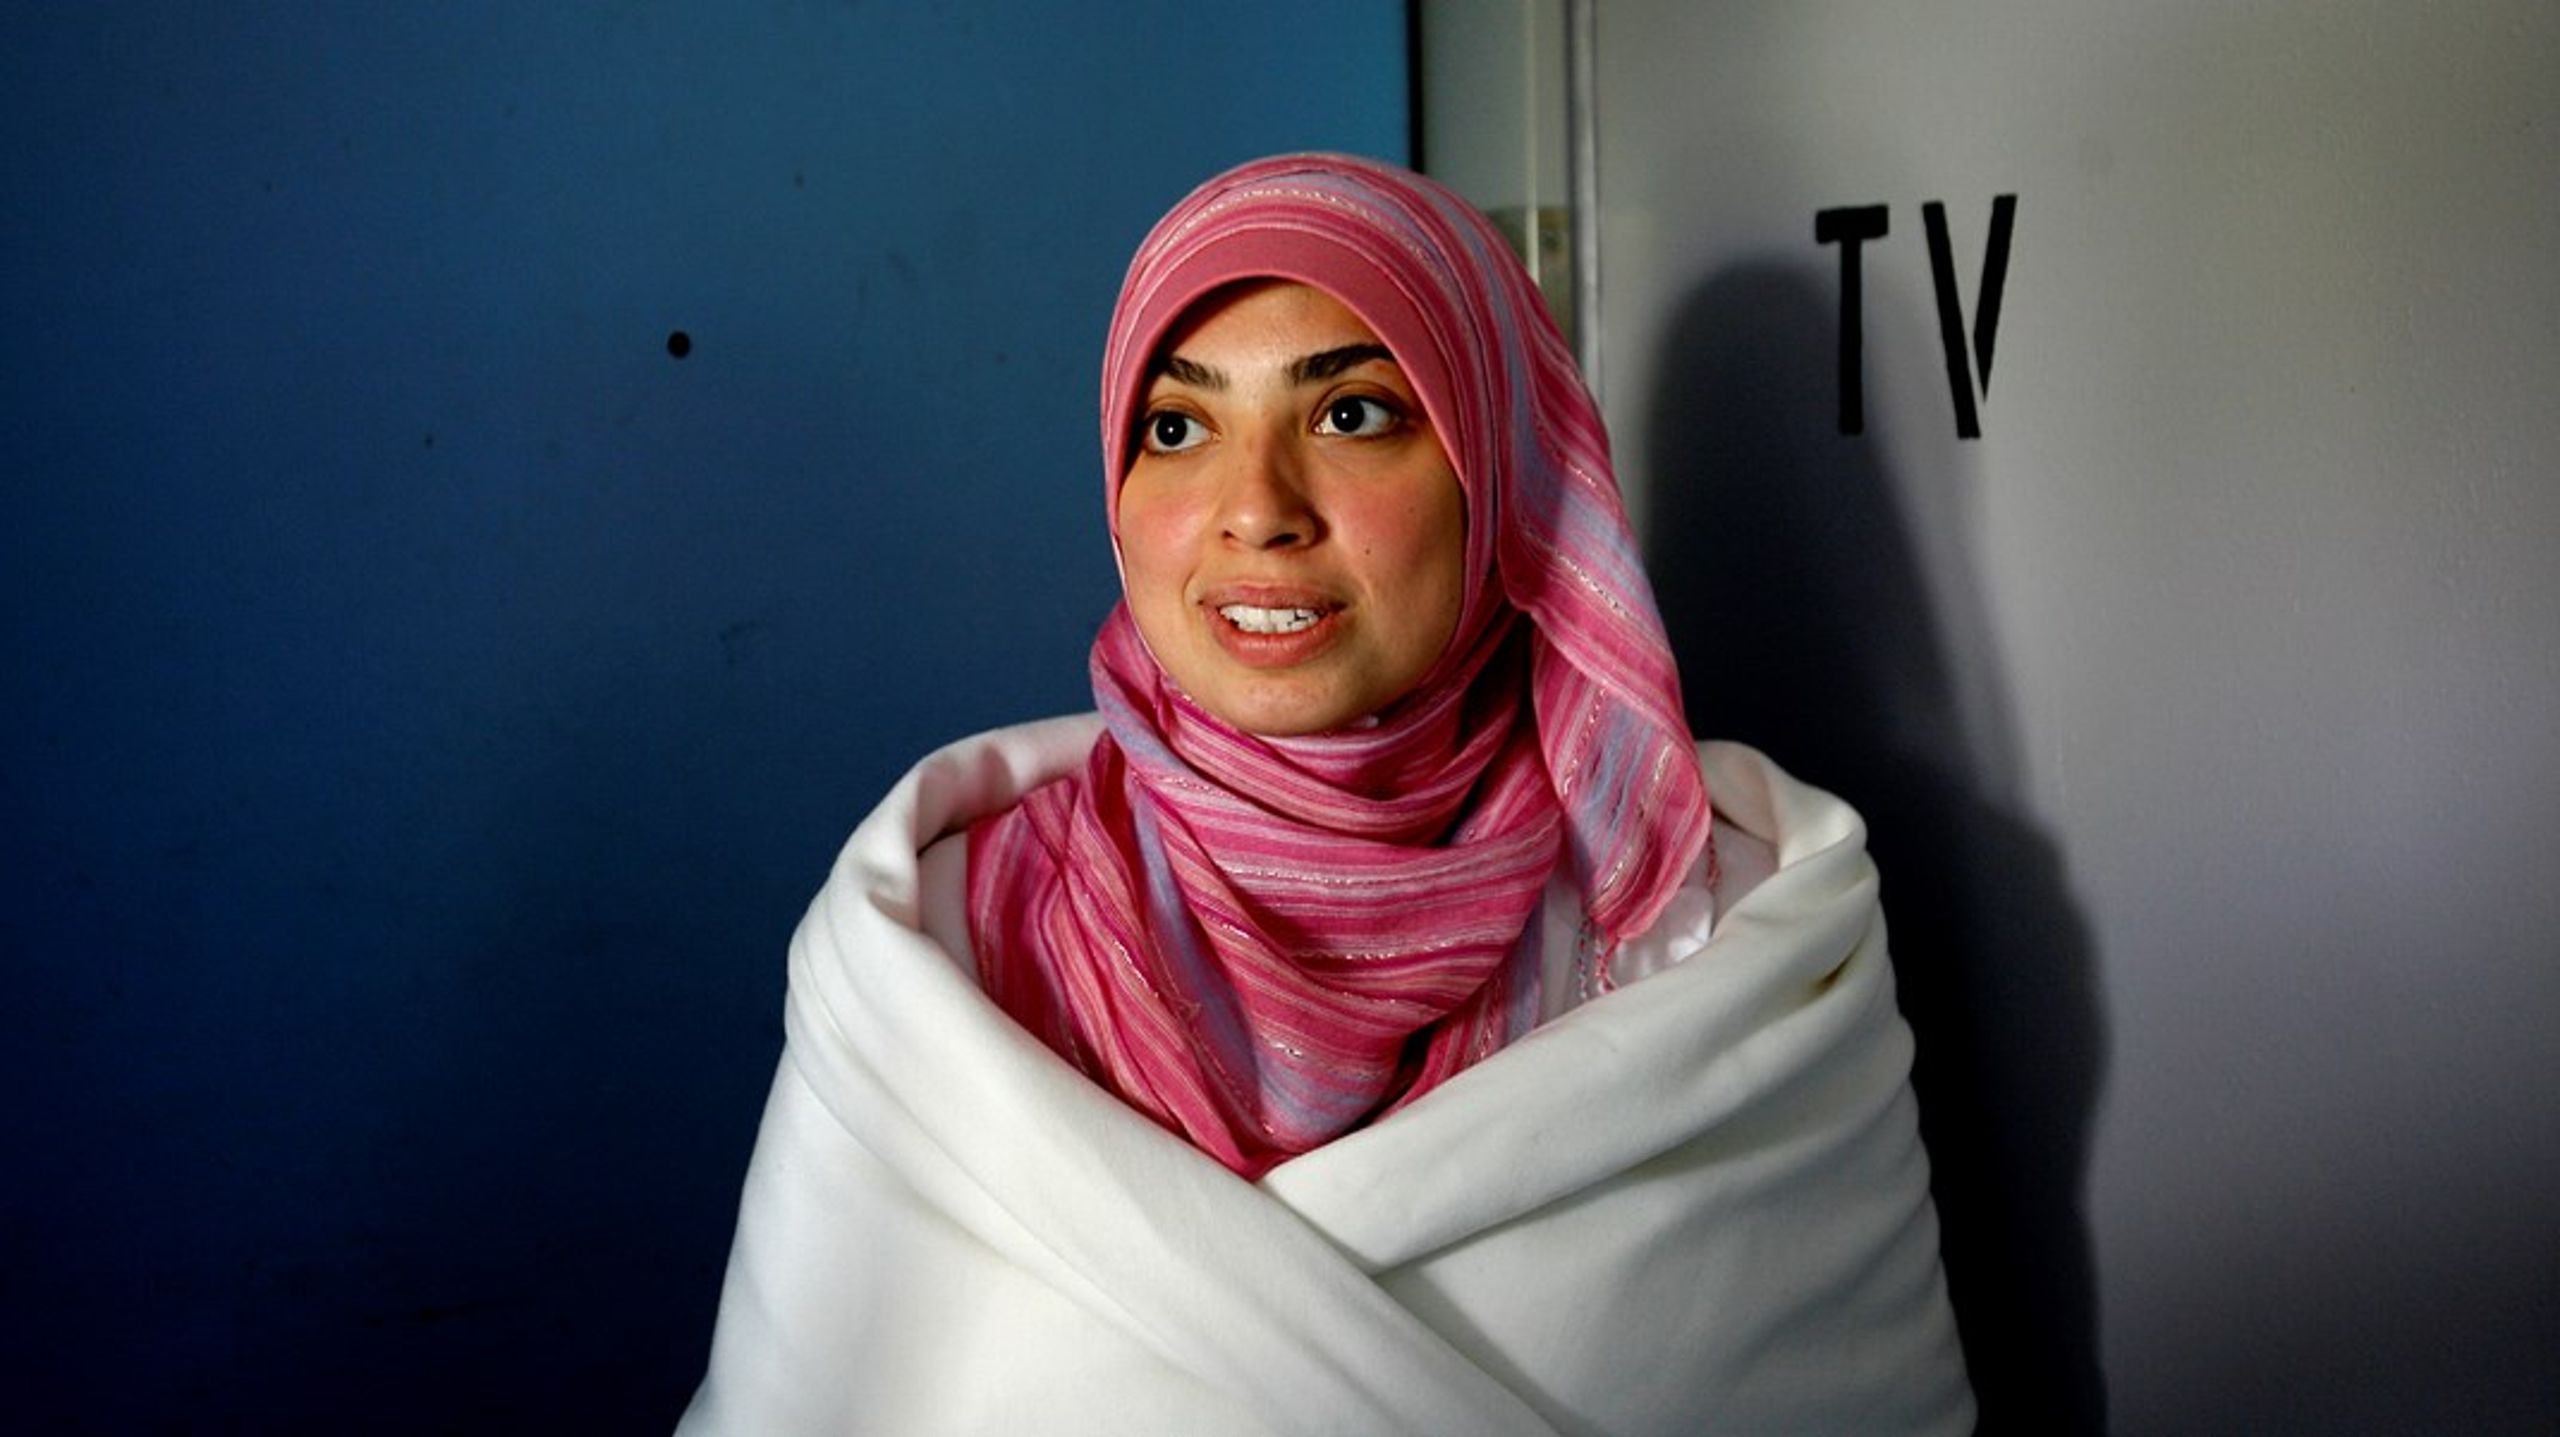 Asmaa Abdol-Hamid skabte røre, da hun&nbsp; i 2007 stillede op til Folketinget for Enhedslisten. Om hun er velintegreret i Danmark afhænger af, hvilke kriterier man lægger vægt på.&nbsp;